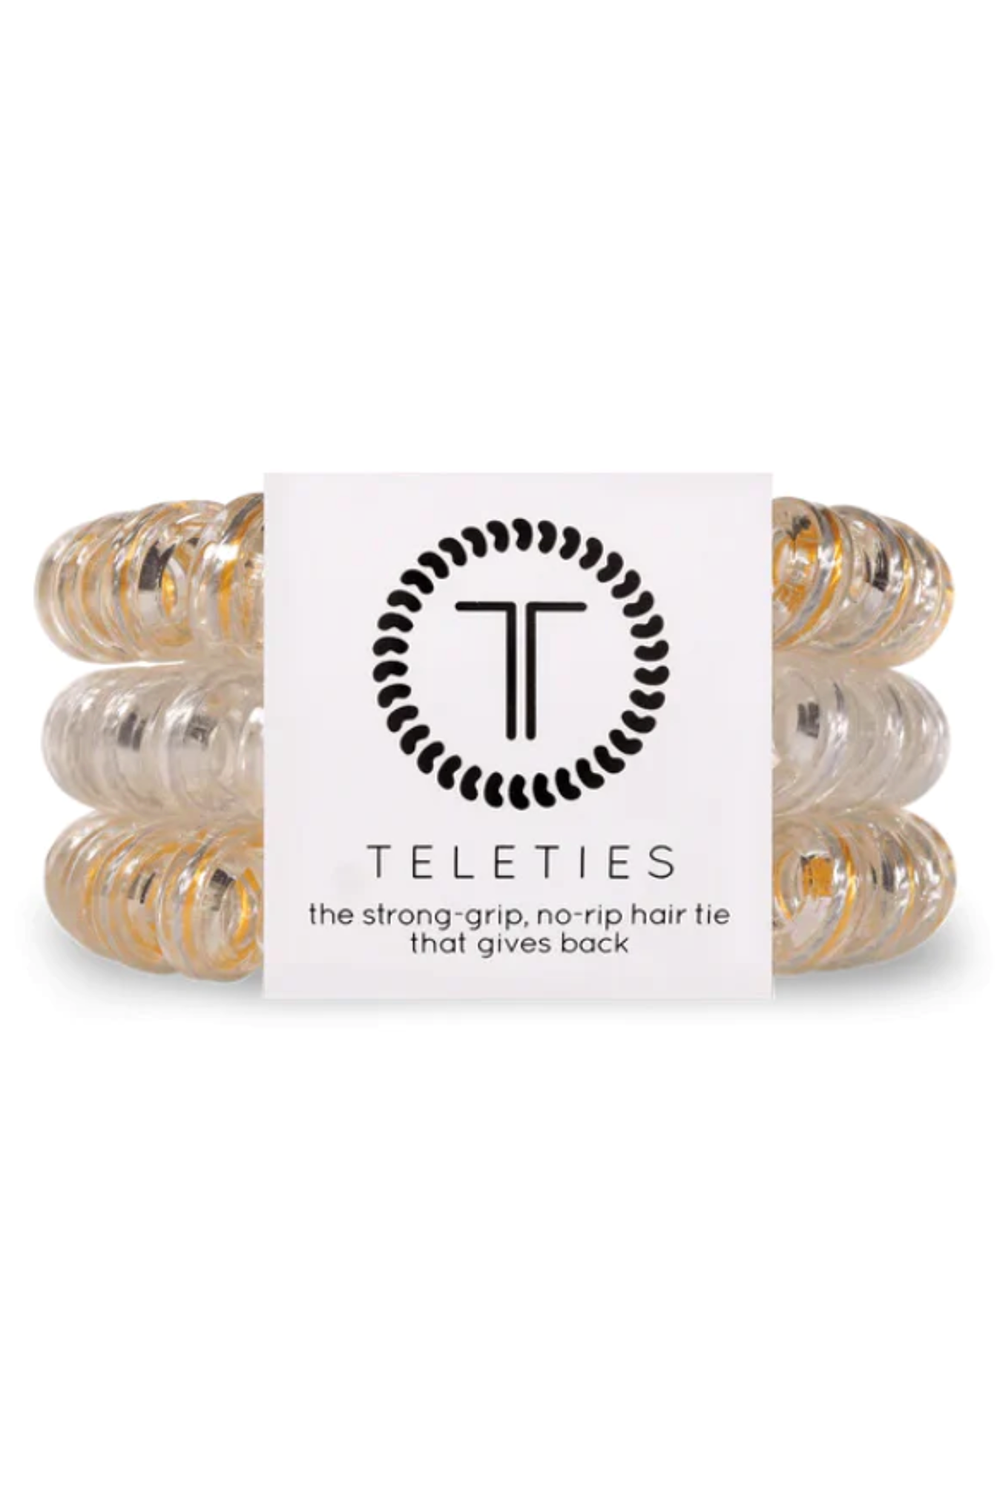 Teleties Hair Ties - Sparkles and Spirits